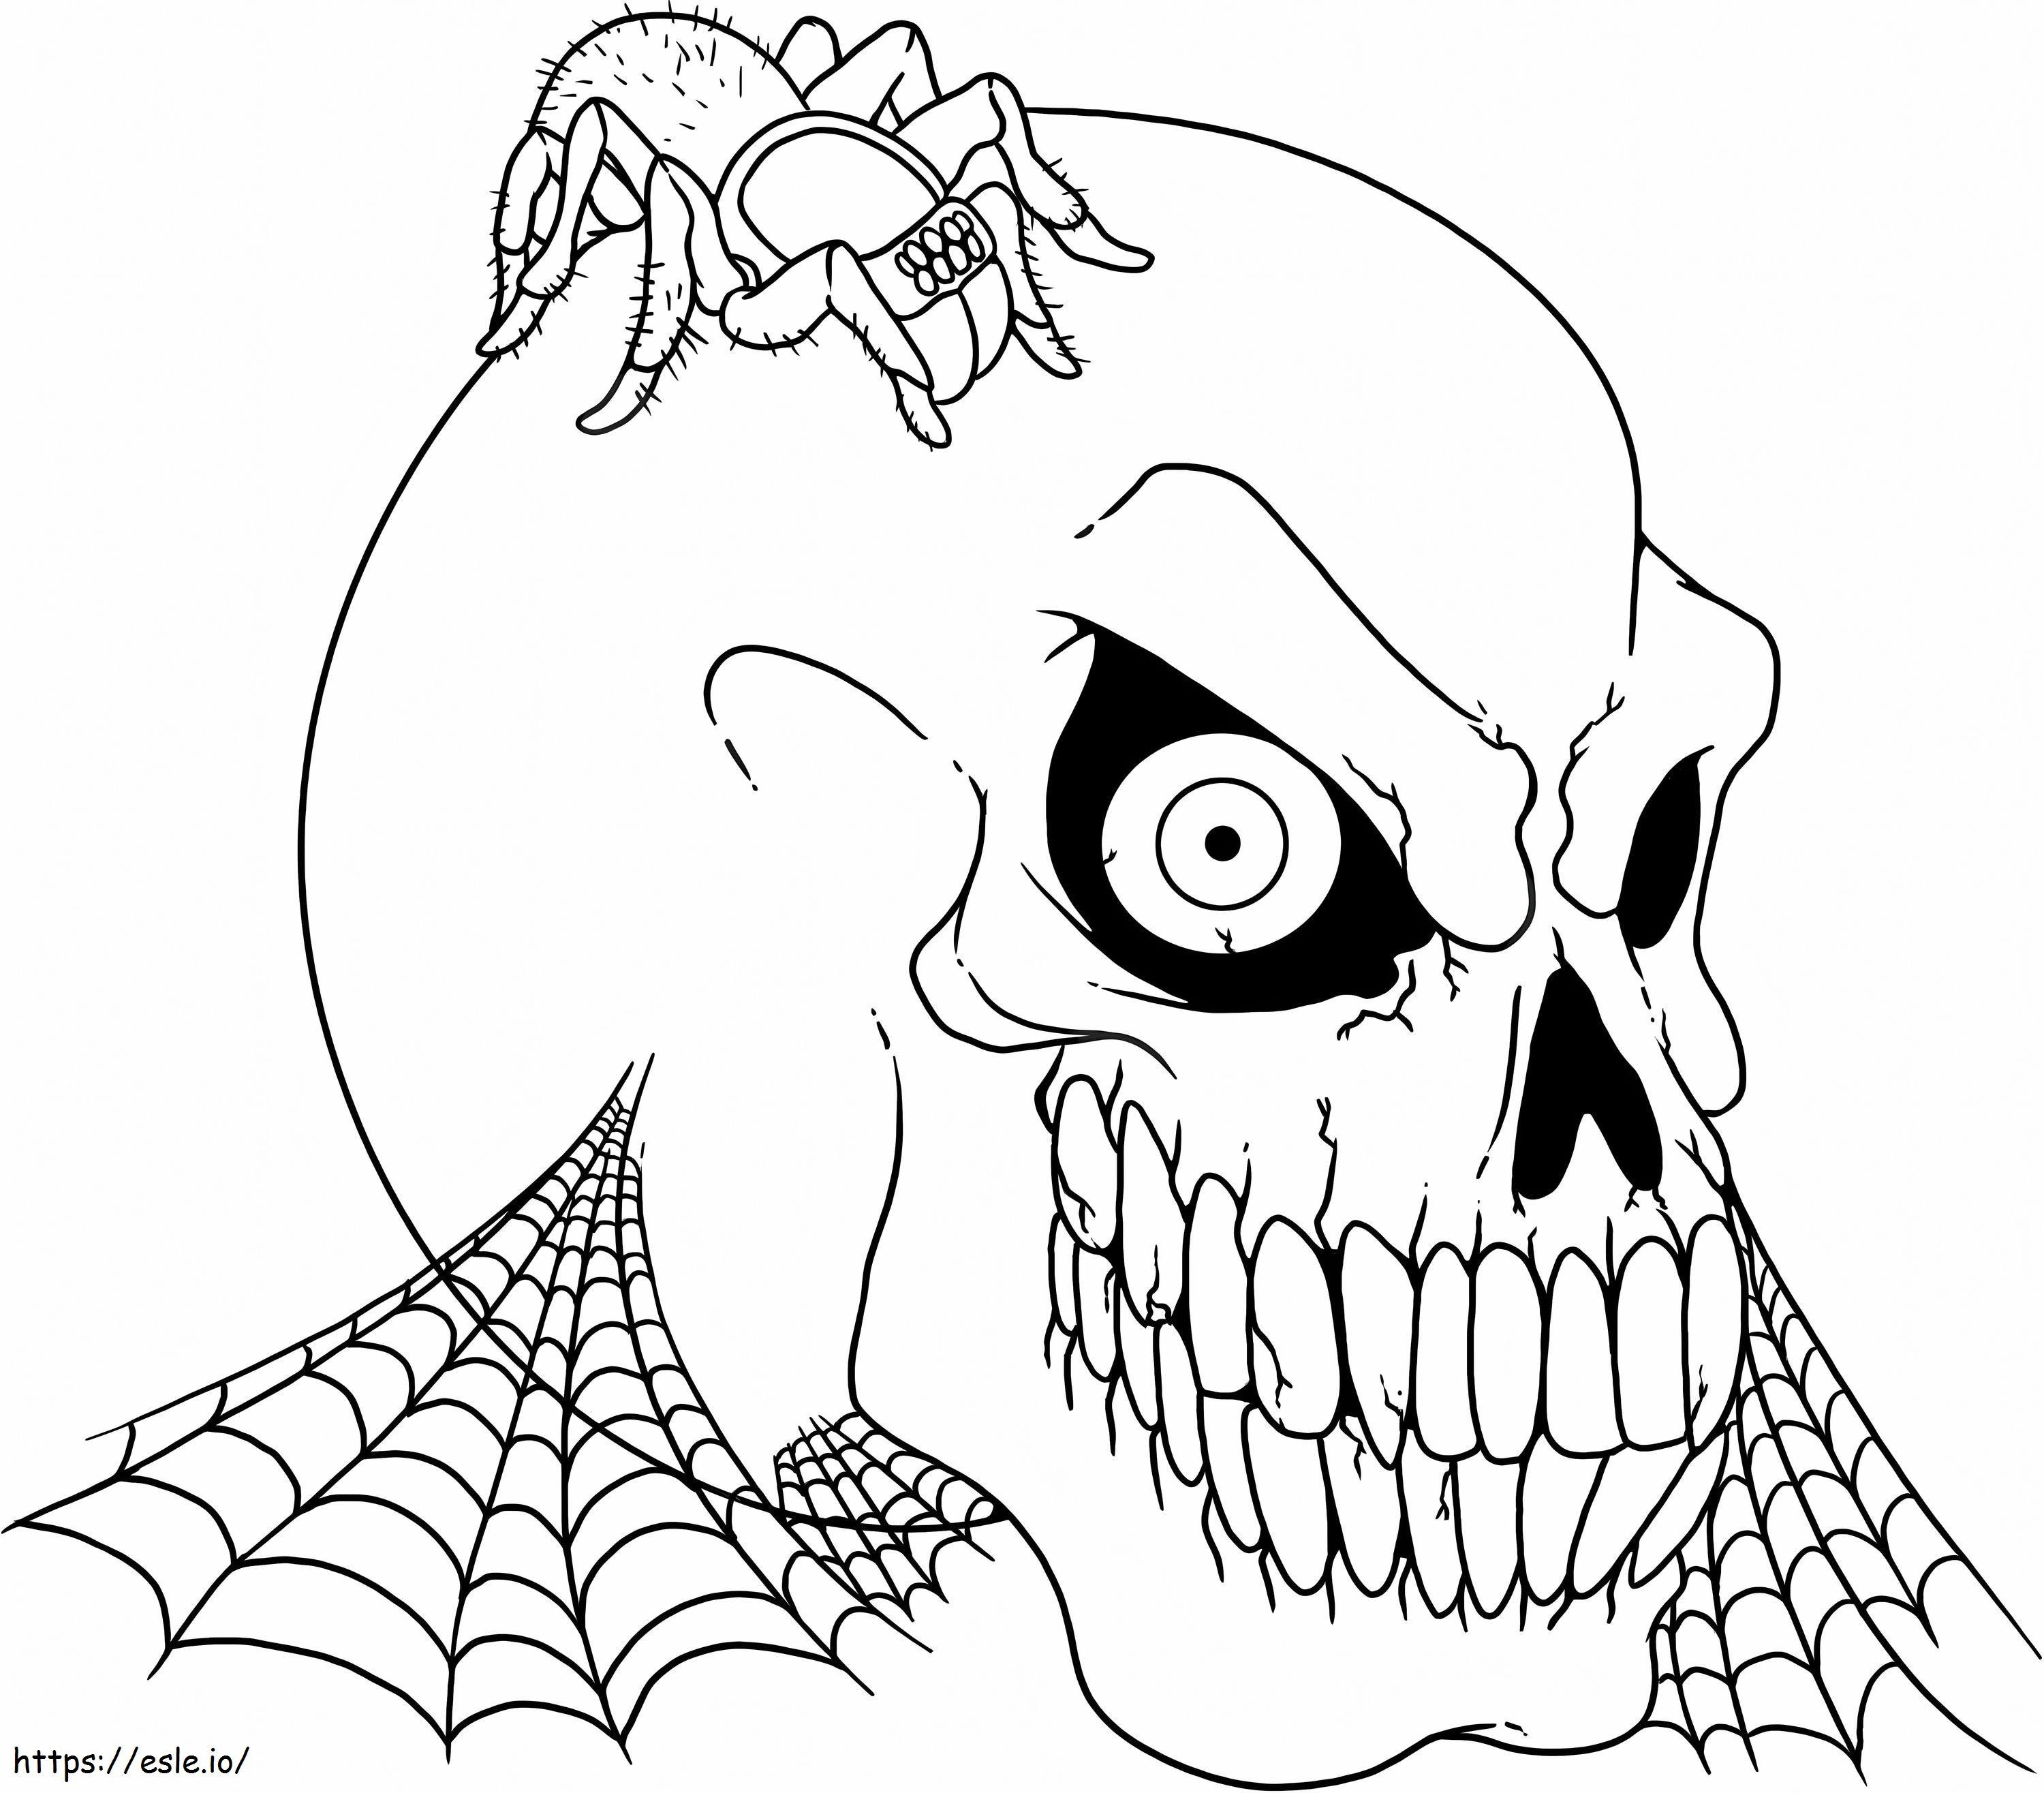 Gruseliger Totenkopf mit Spinne ausmalbilder